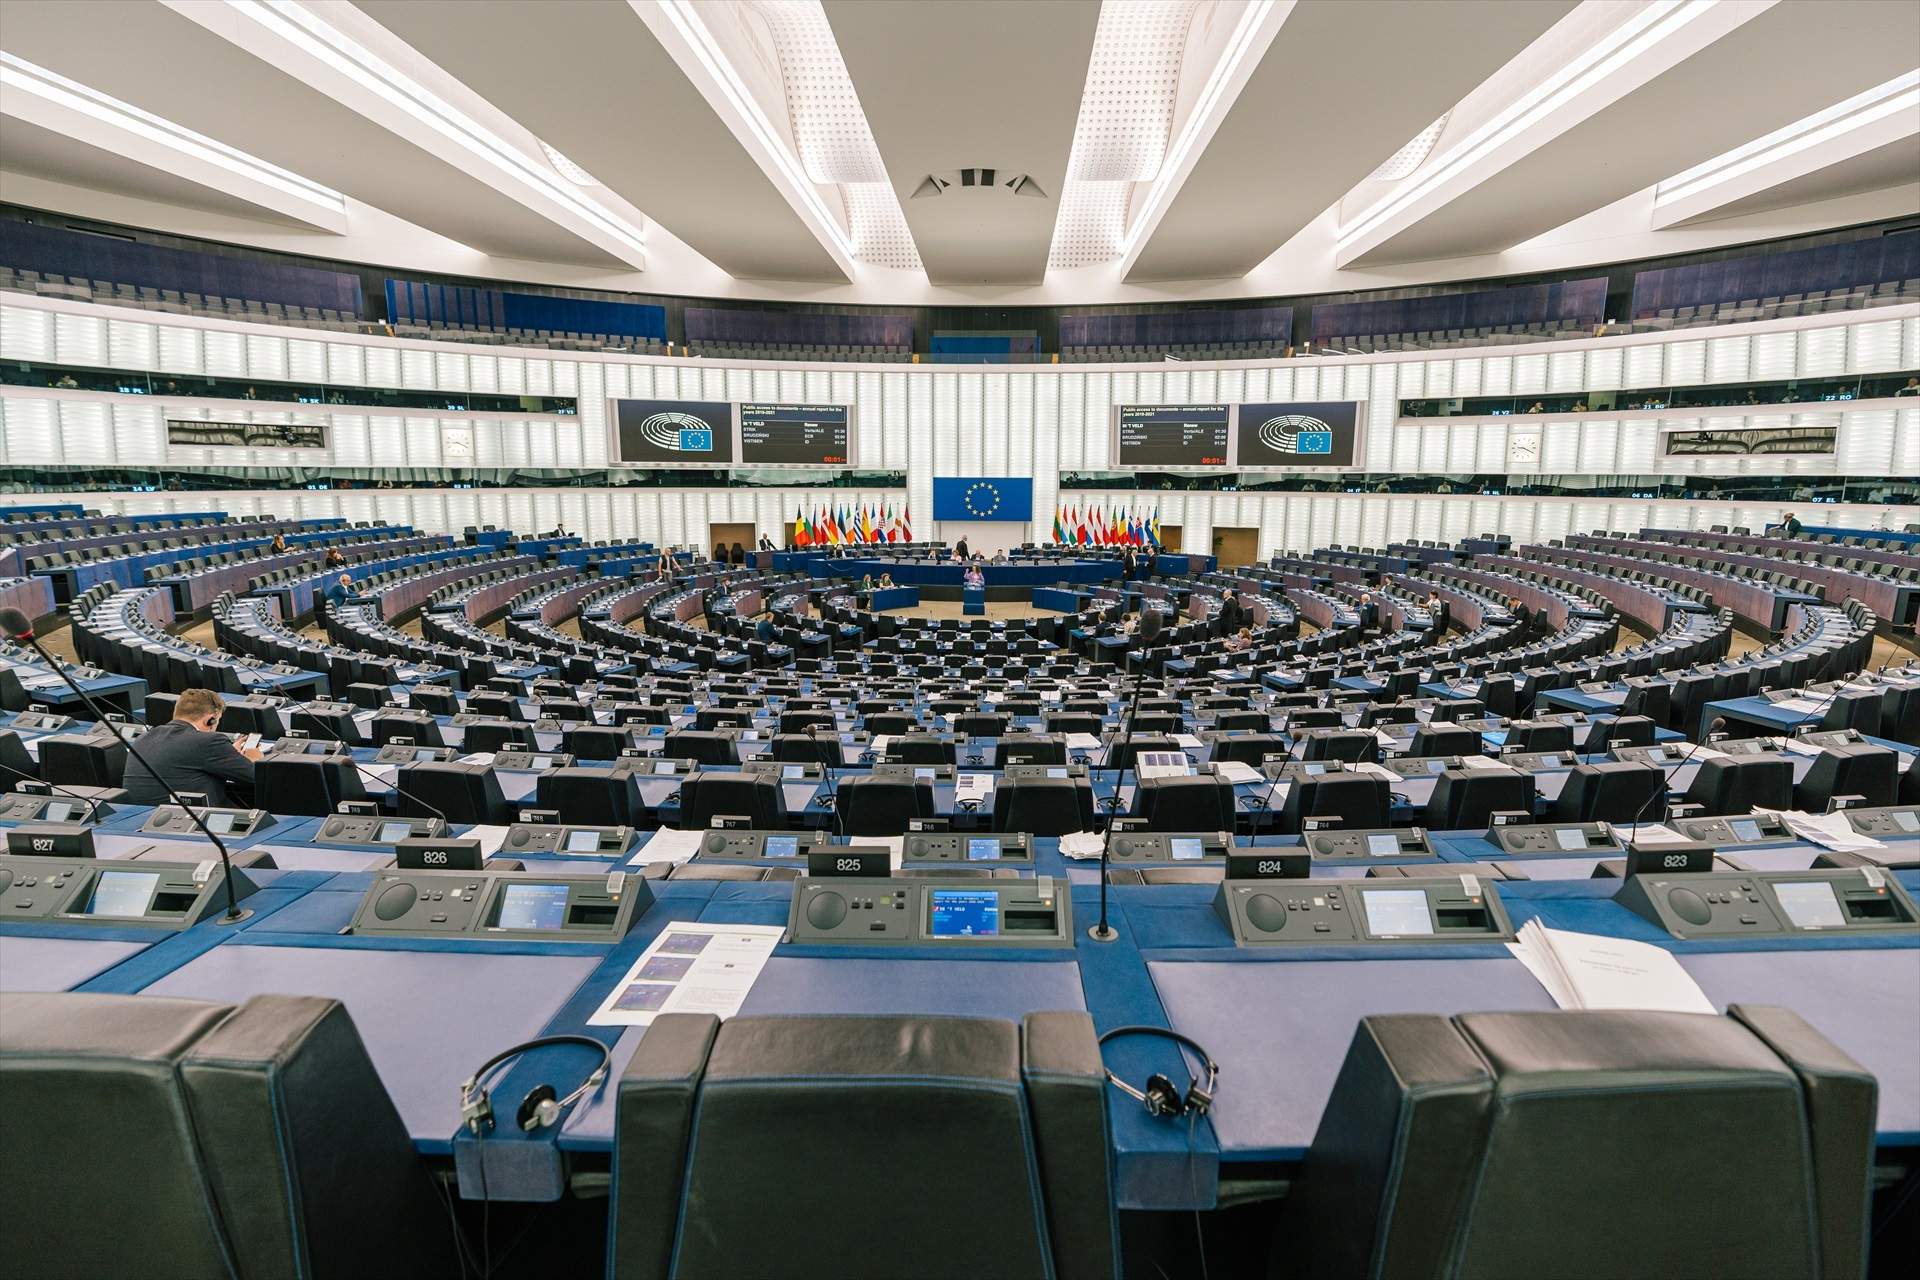 Crisi d'identitat a la UE per falta de diversitat entre els eurodiputats